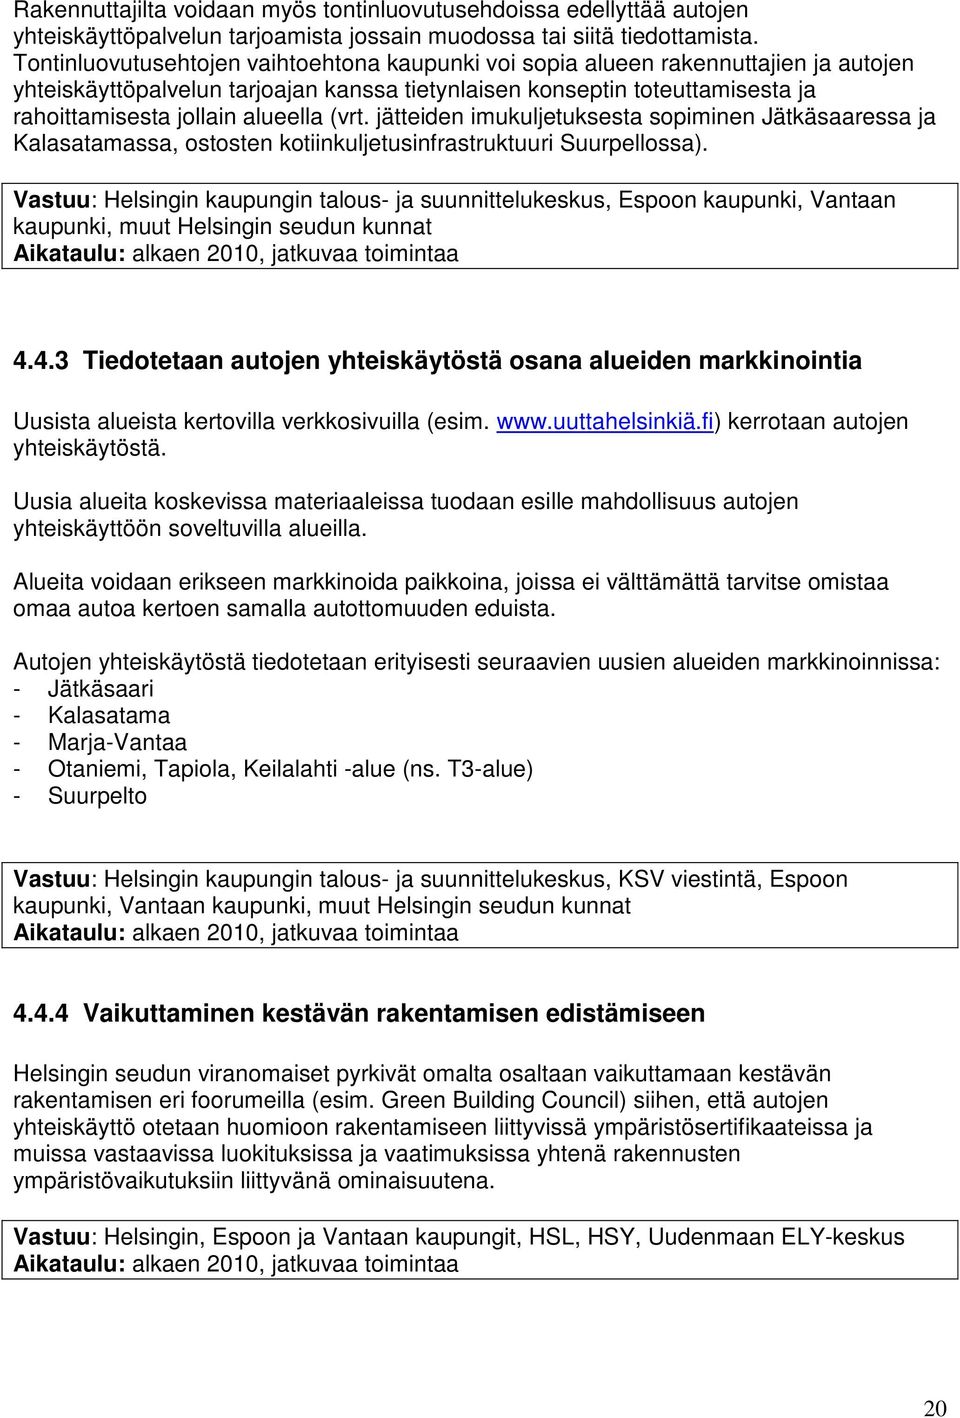 (vrt. jätteiden imukuljetuksesta sopiminen Jätkäsaaressa ja Kalasatamassa, ostosten kotiinkuljetusinfrastruktuuri Suurpellossa).